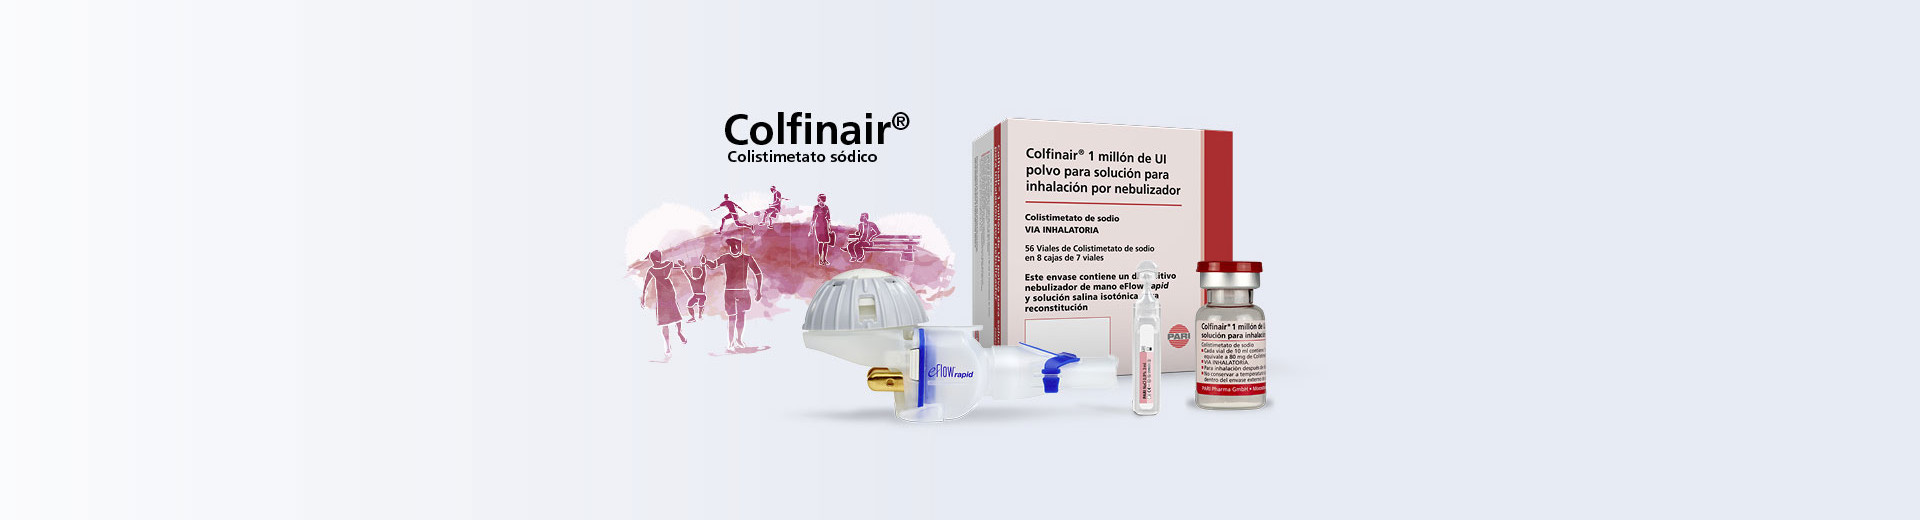 Colfinair – Colistimetato sodico, 1 millon de-UI